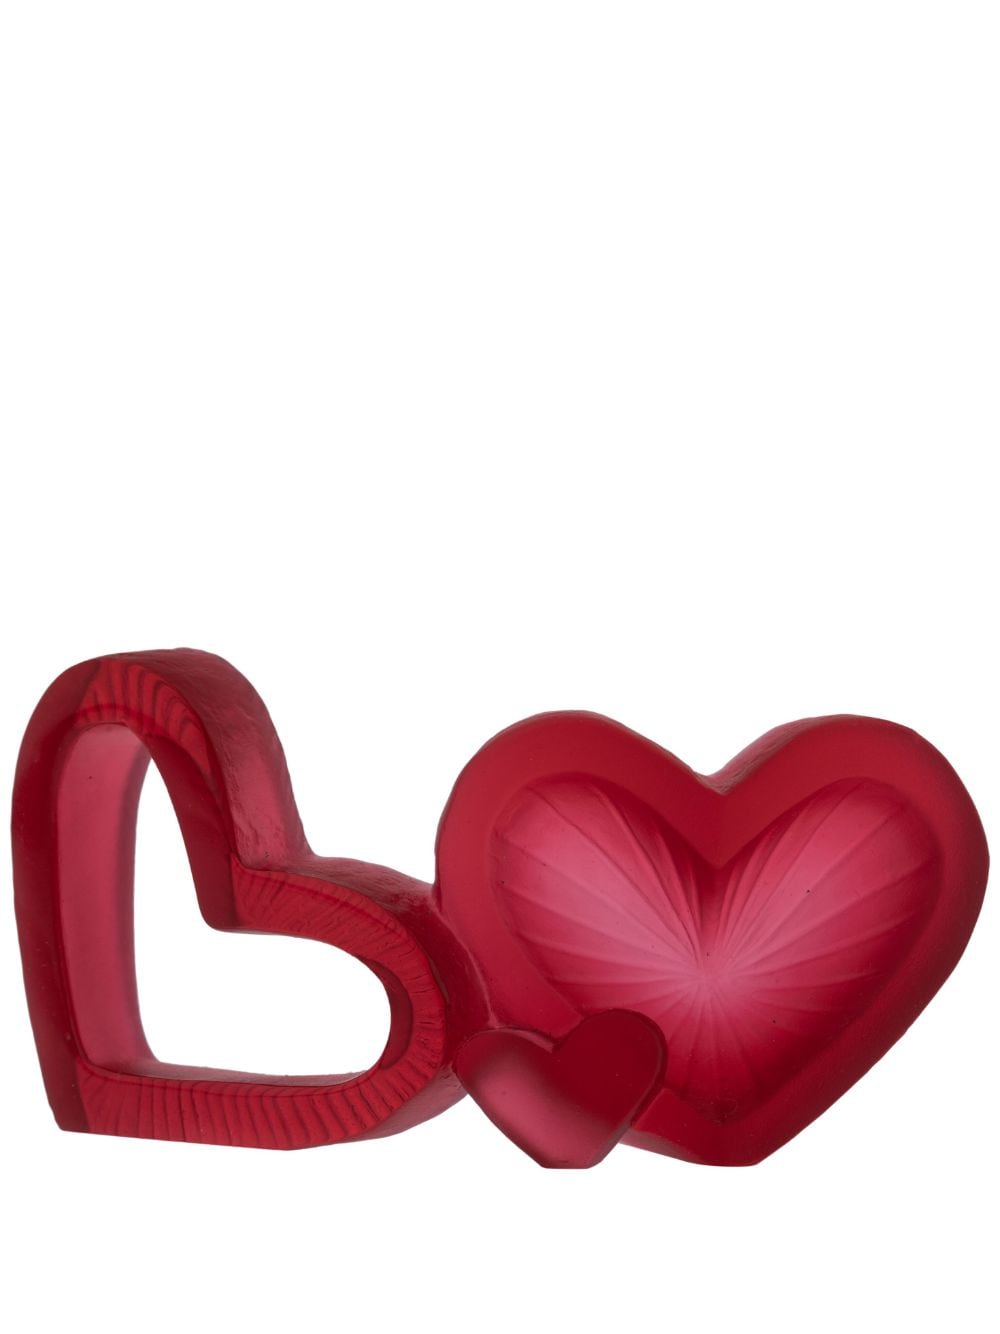 Daum Valentine Skulptur in Herzform aus Kristall - Rot von Daum